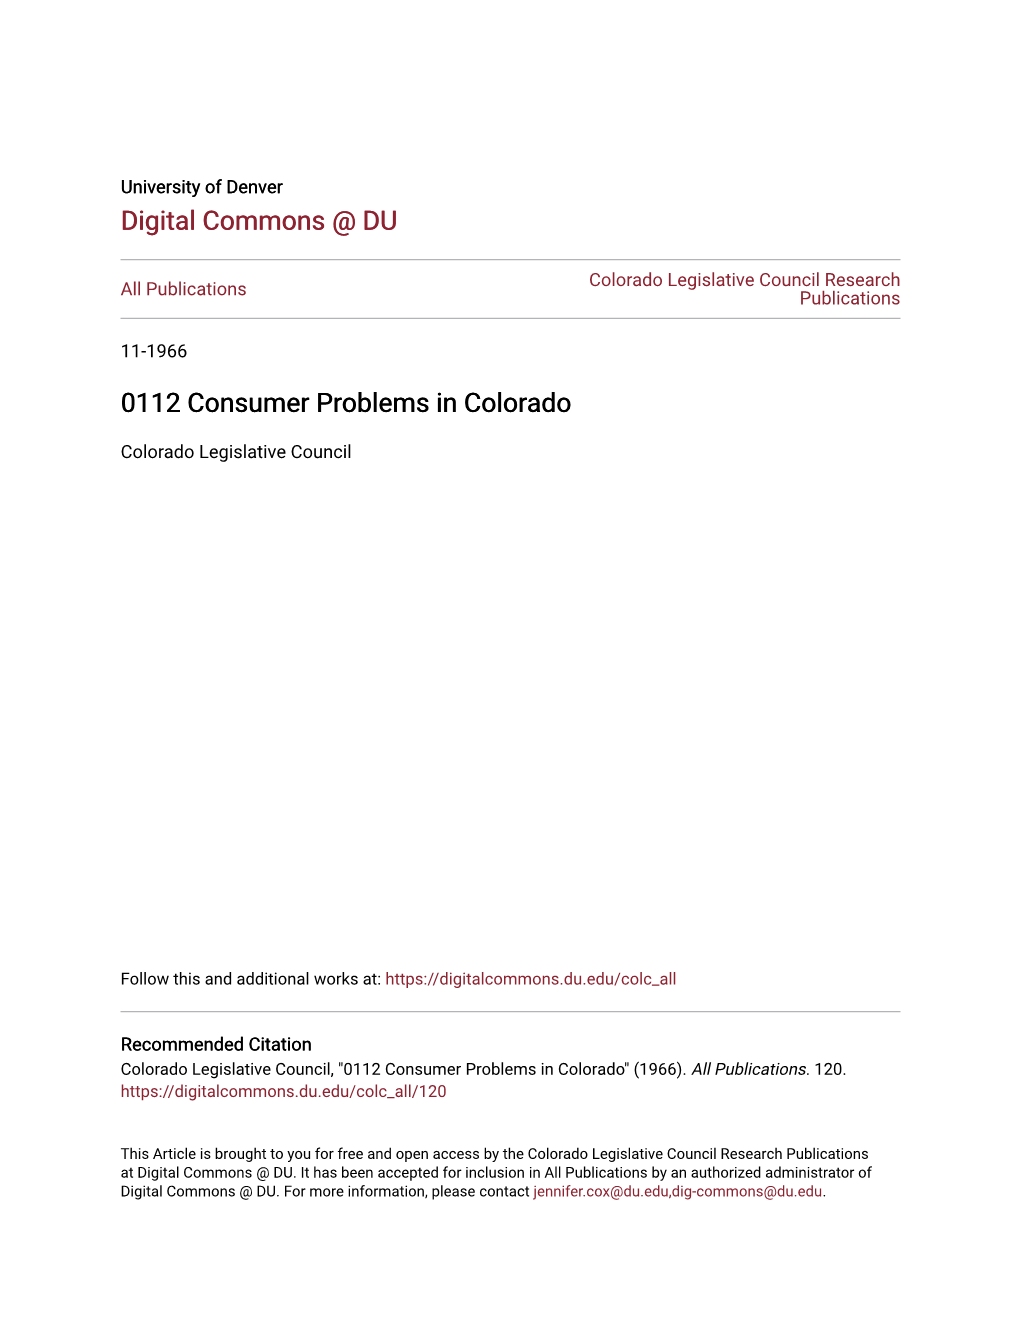 0112 Consumer Problems in Colorado